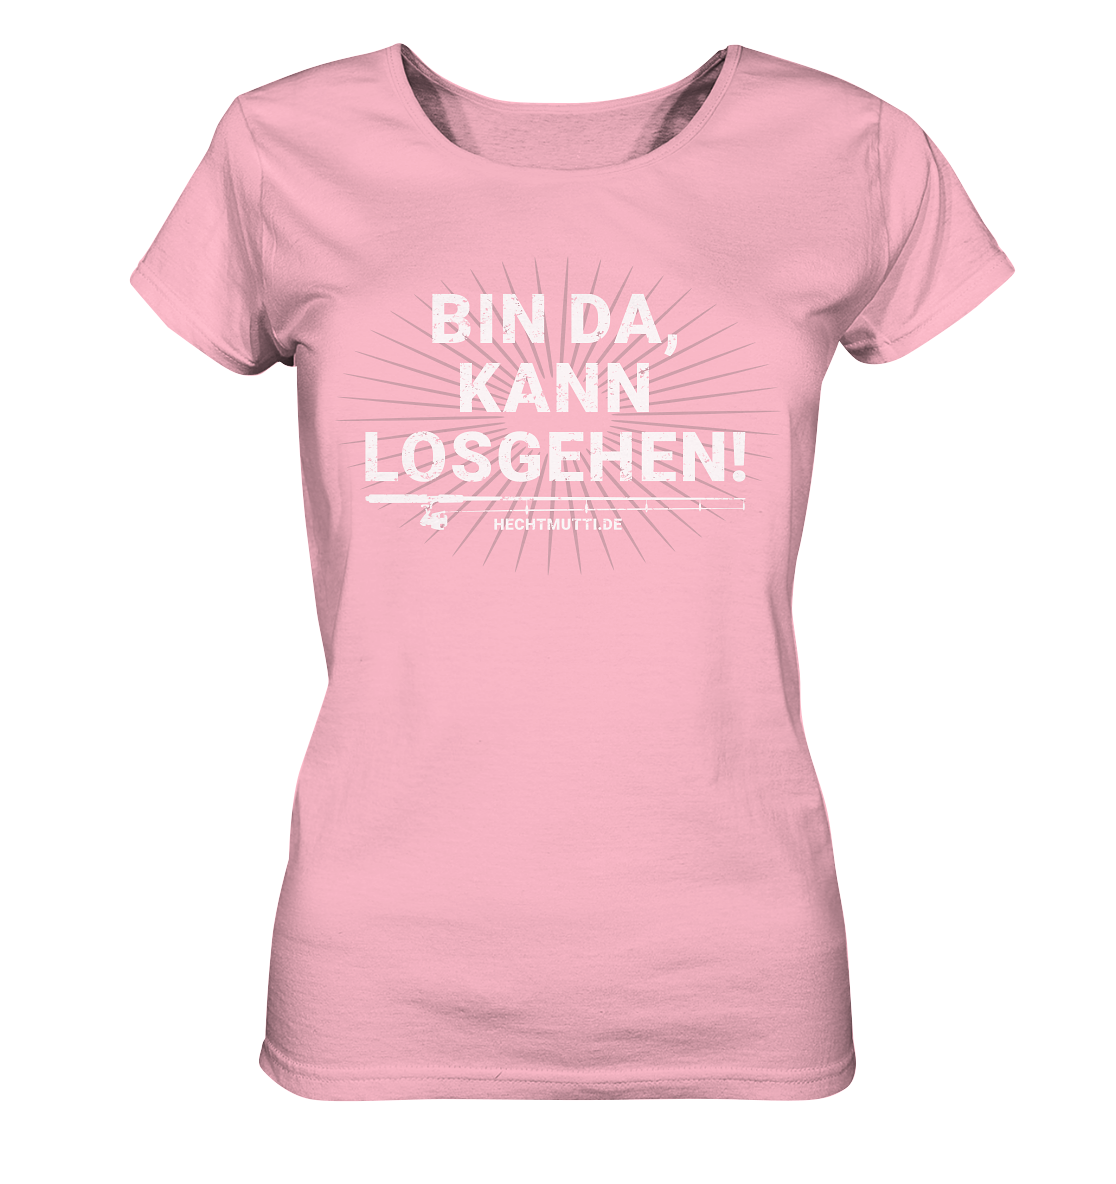 Frauen kann losgehen Bin - Bio - T-Shirt da, Hechtmutti